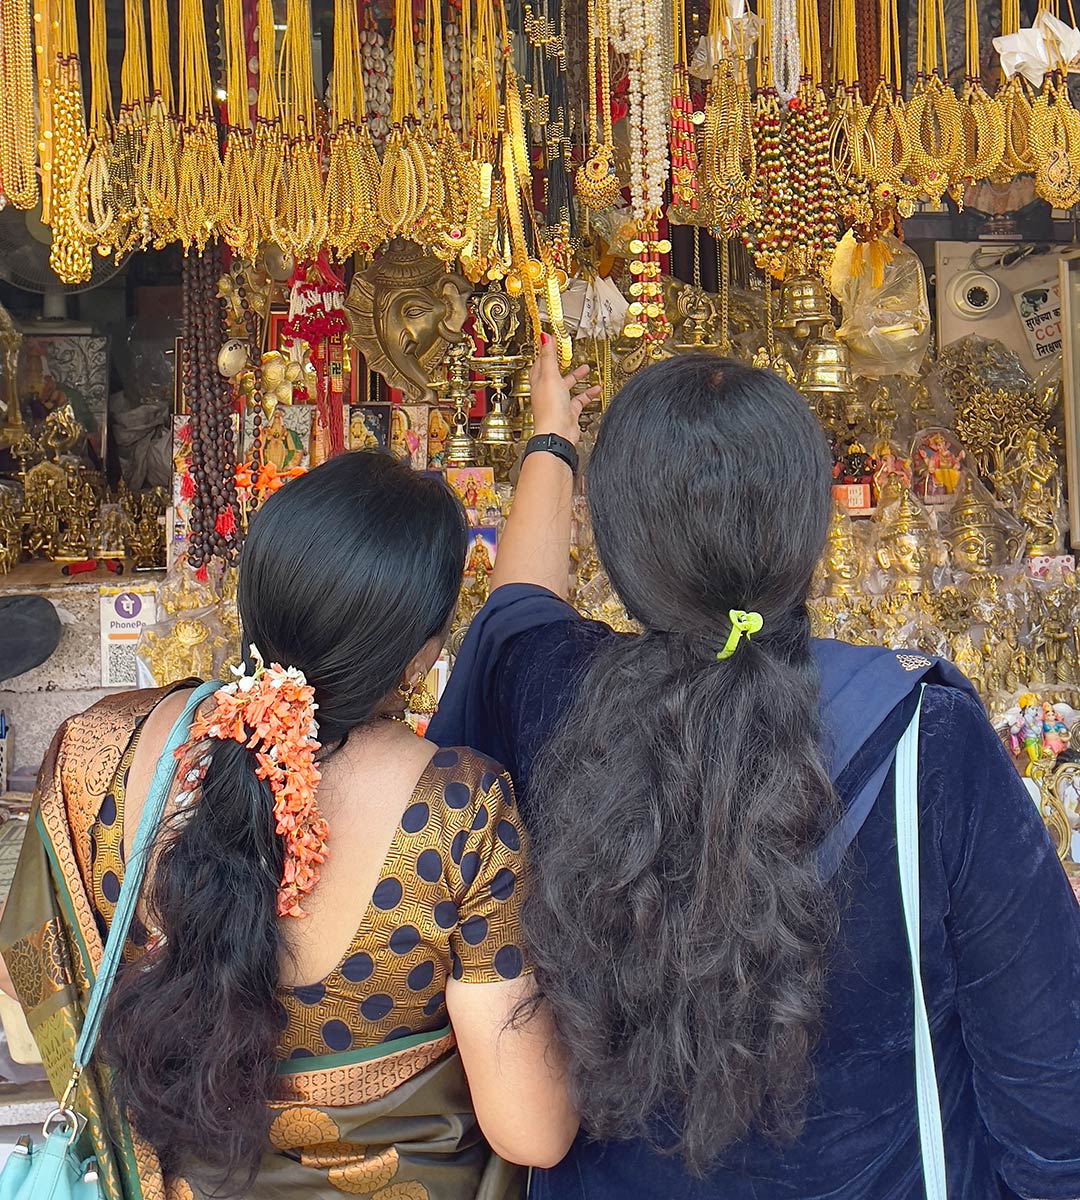 महालक्ष्मी मंदिर, कोल्हापुर। तीर्थयात्रियों की दुकान पर महिलाएं धार्मिक वस्तुएं बेच रही हैं।